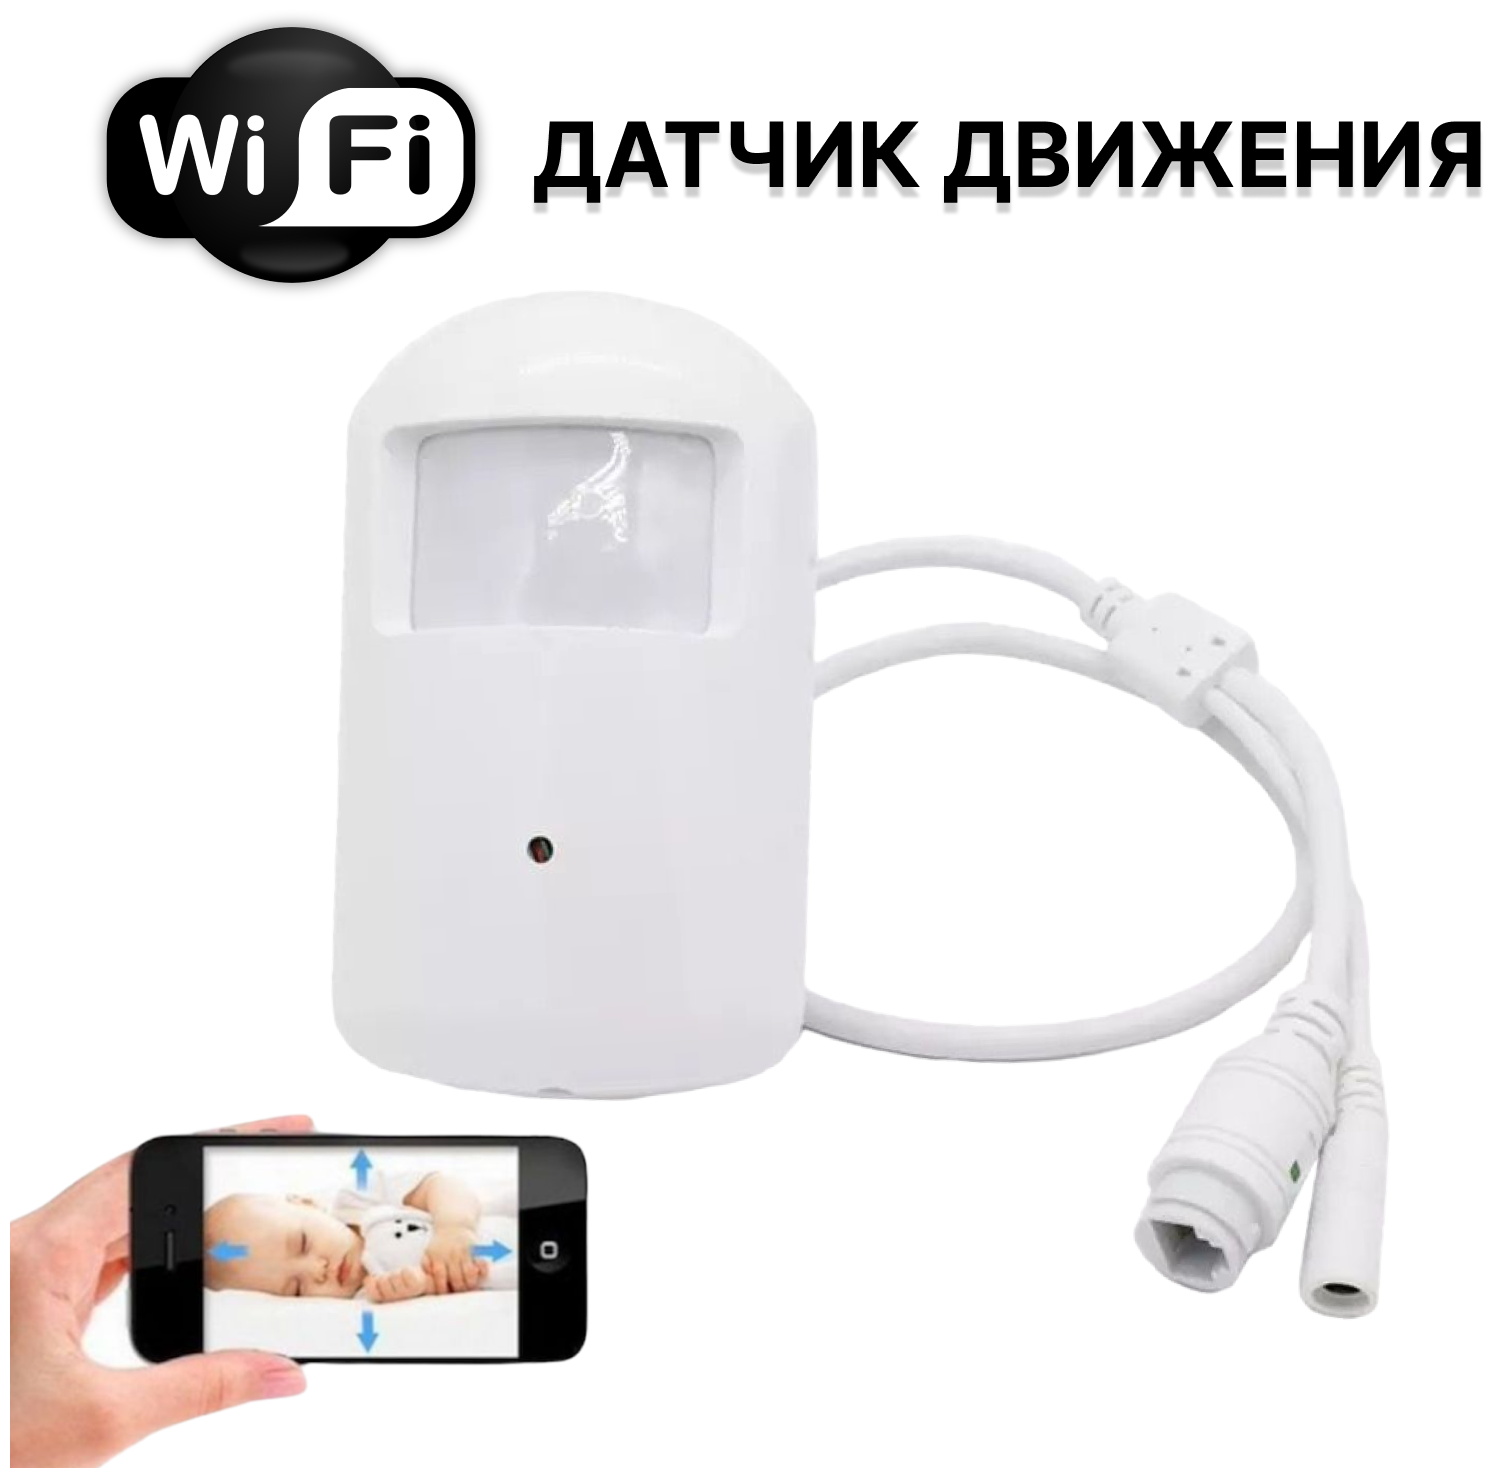 Видеокамера Wi Fi датчик движения, ИК-подсветка, встроенный микрофон, удаленный доступ